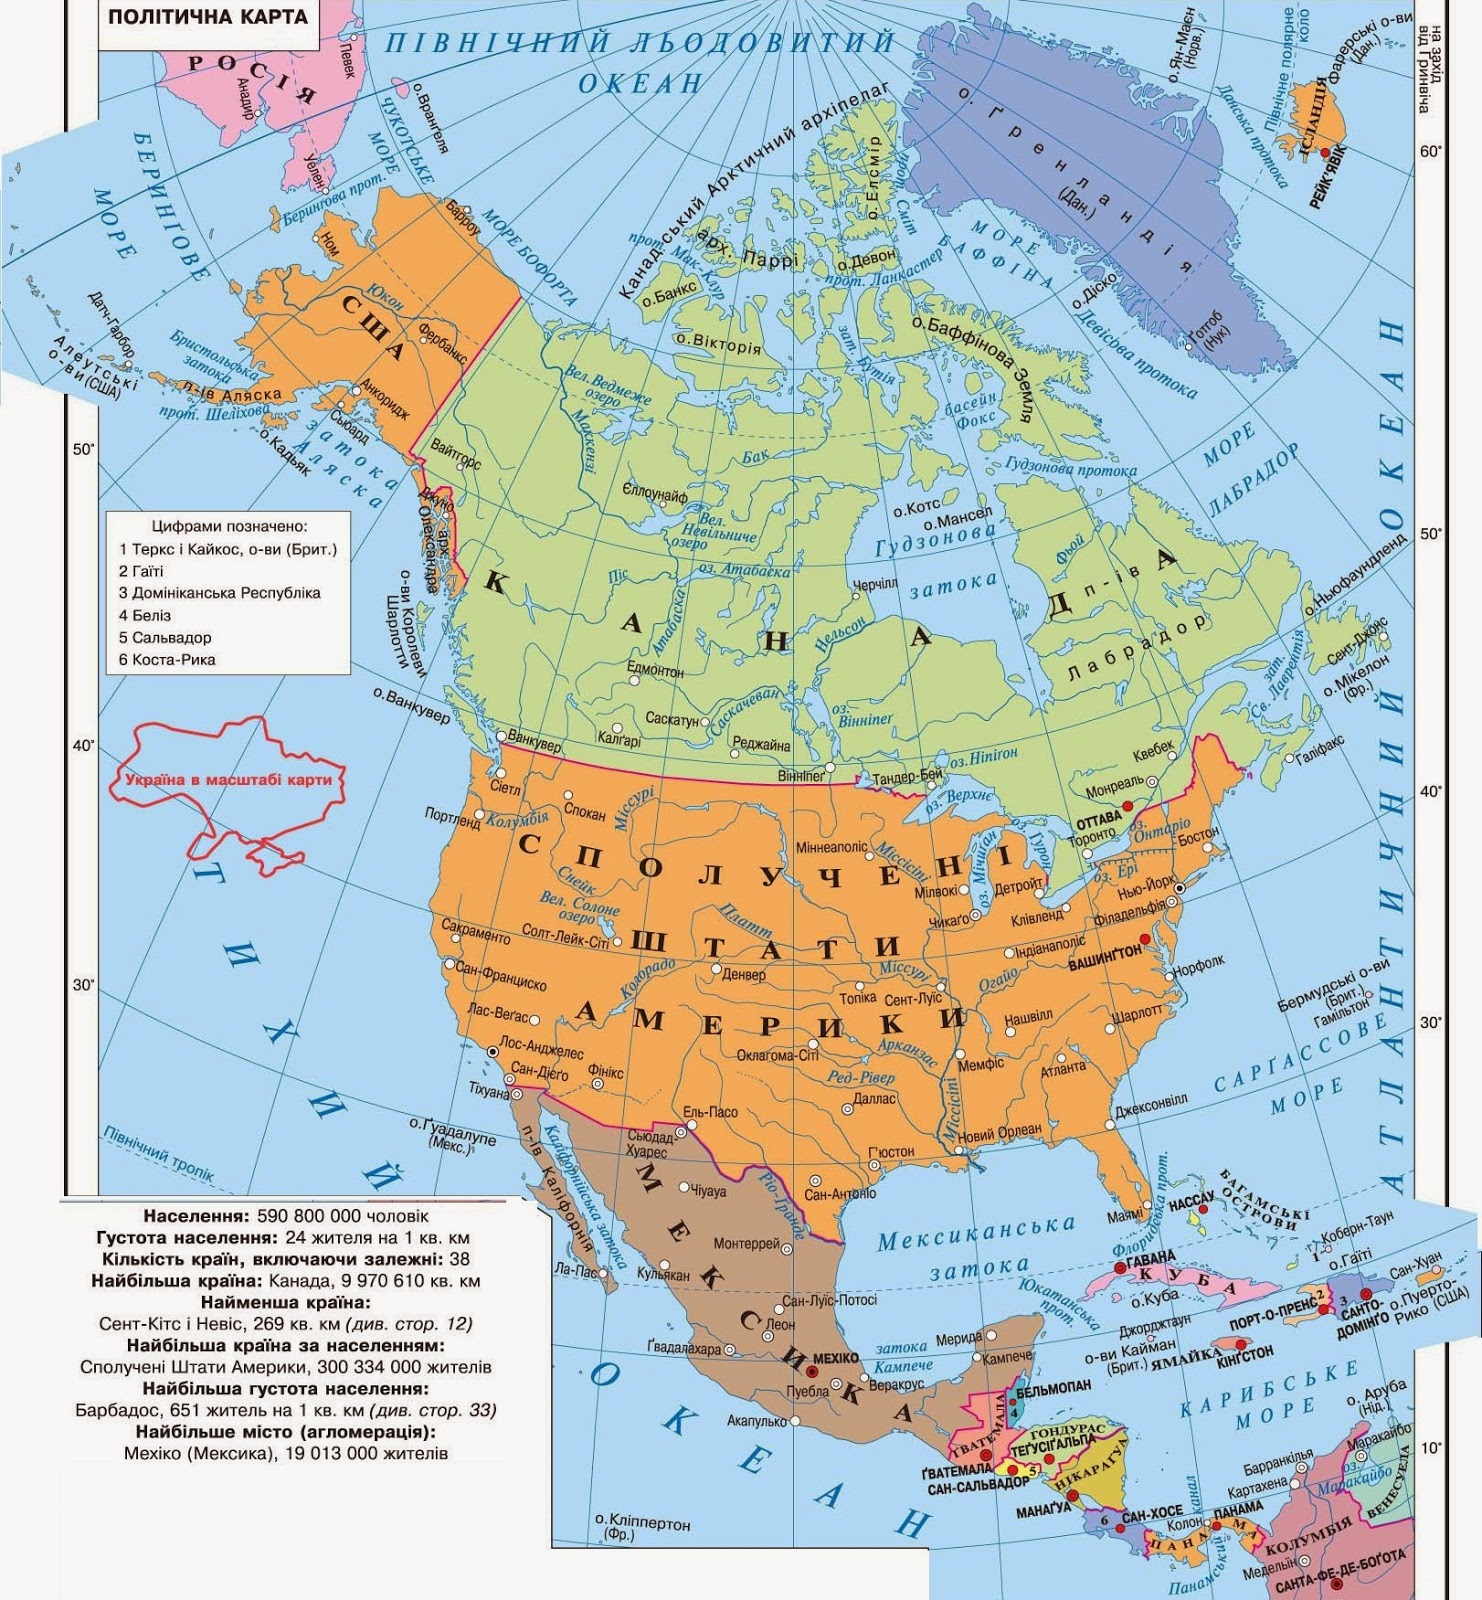 Границы северной америки какие. Подробная политическая карта Северной Америки. Физическая карта Северной Америки. Подробная карта Северной Америки. Политическая карта Сев Америки.